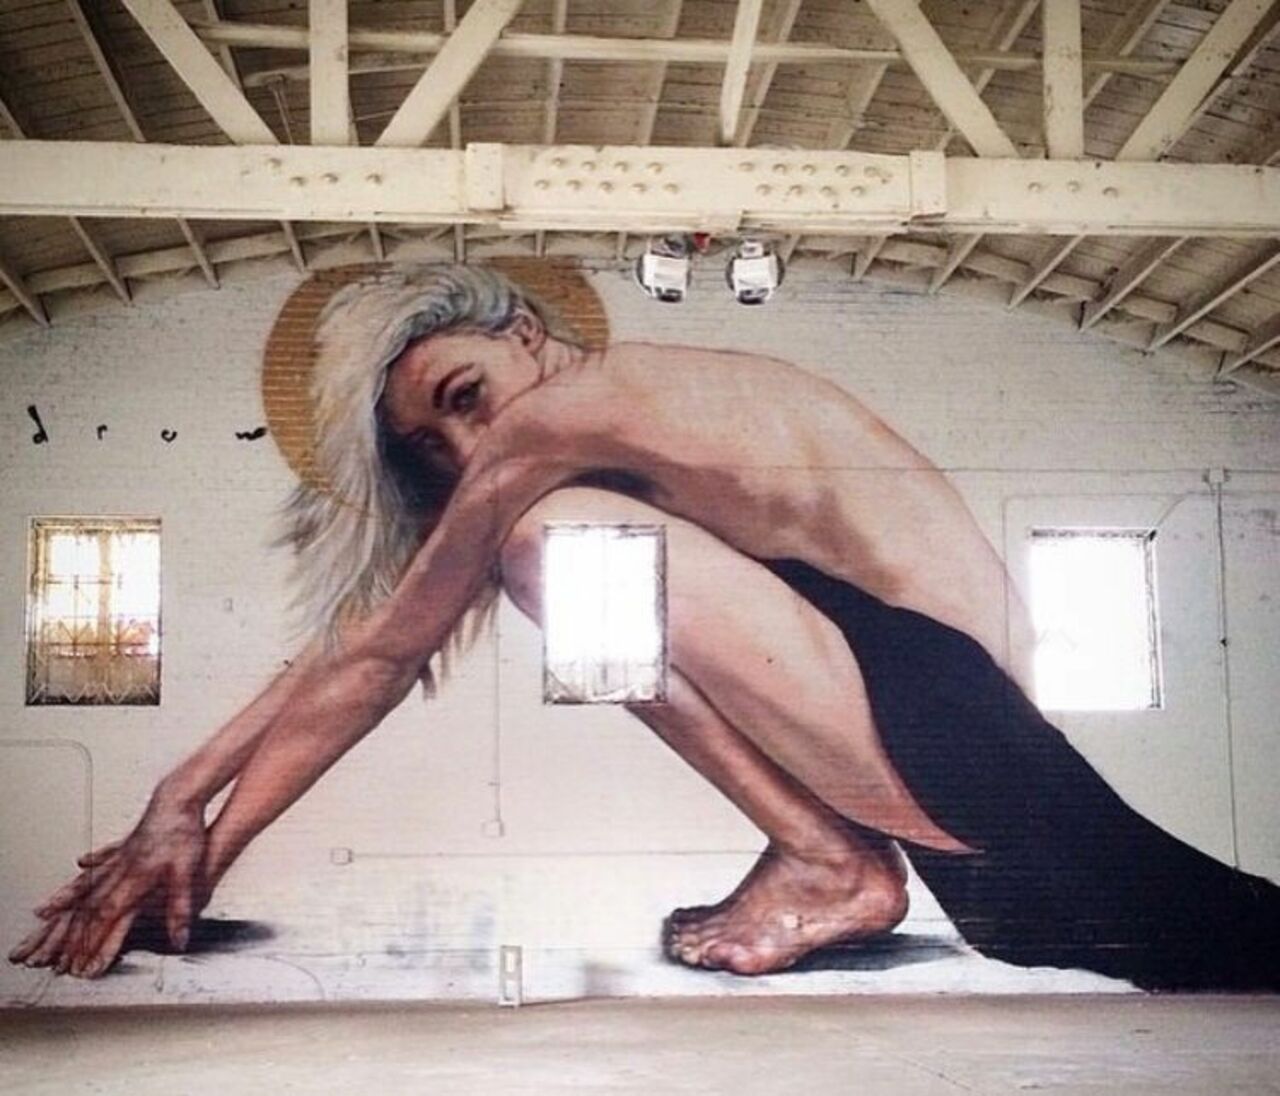 New work by Drew Merritt #streetart #mural #graffiti #art https://t.co/HmkvoXoDtl